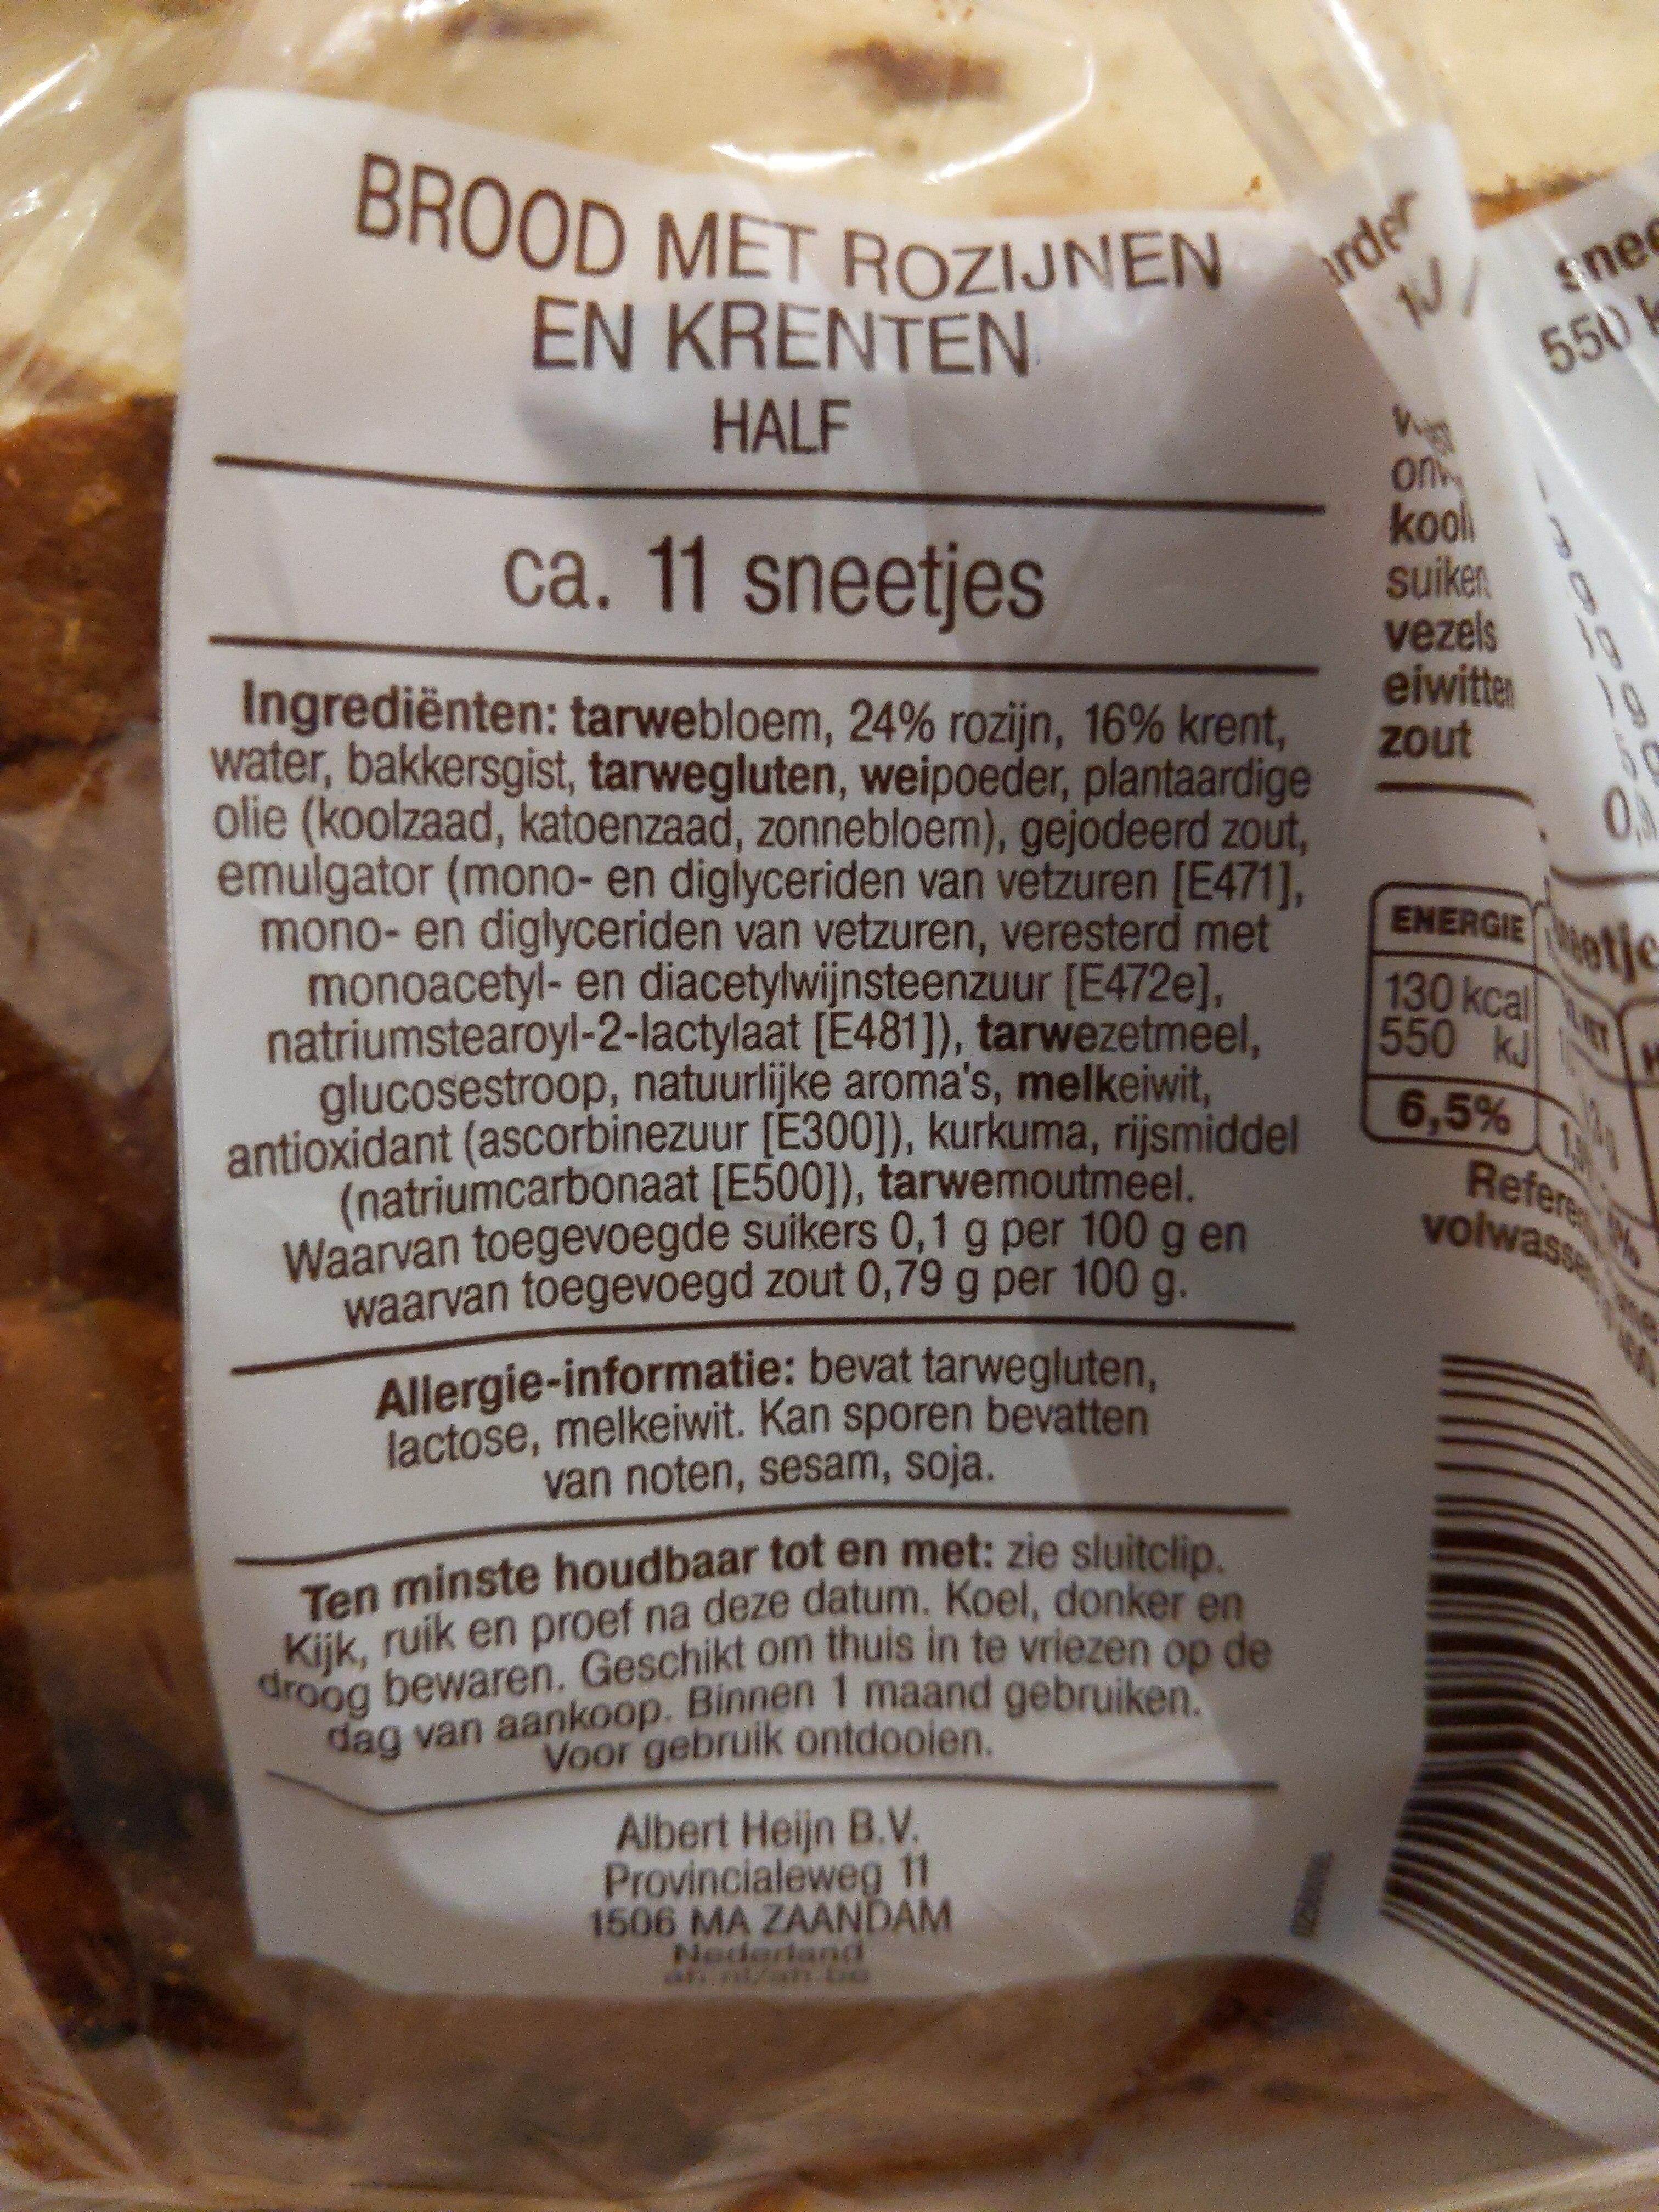 Brood met rozijnen en krenten - Ingredientes - en